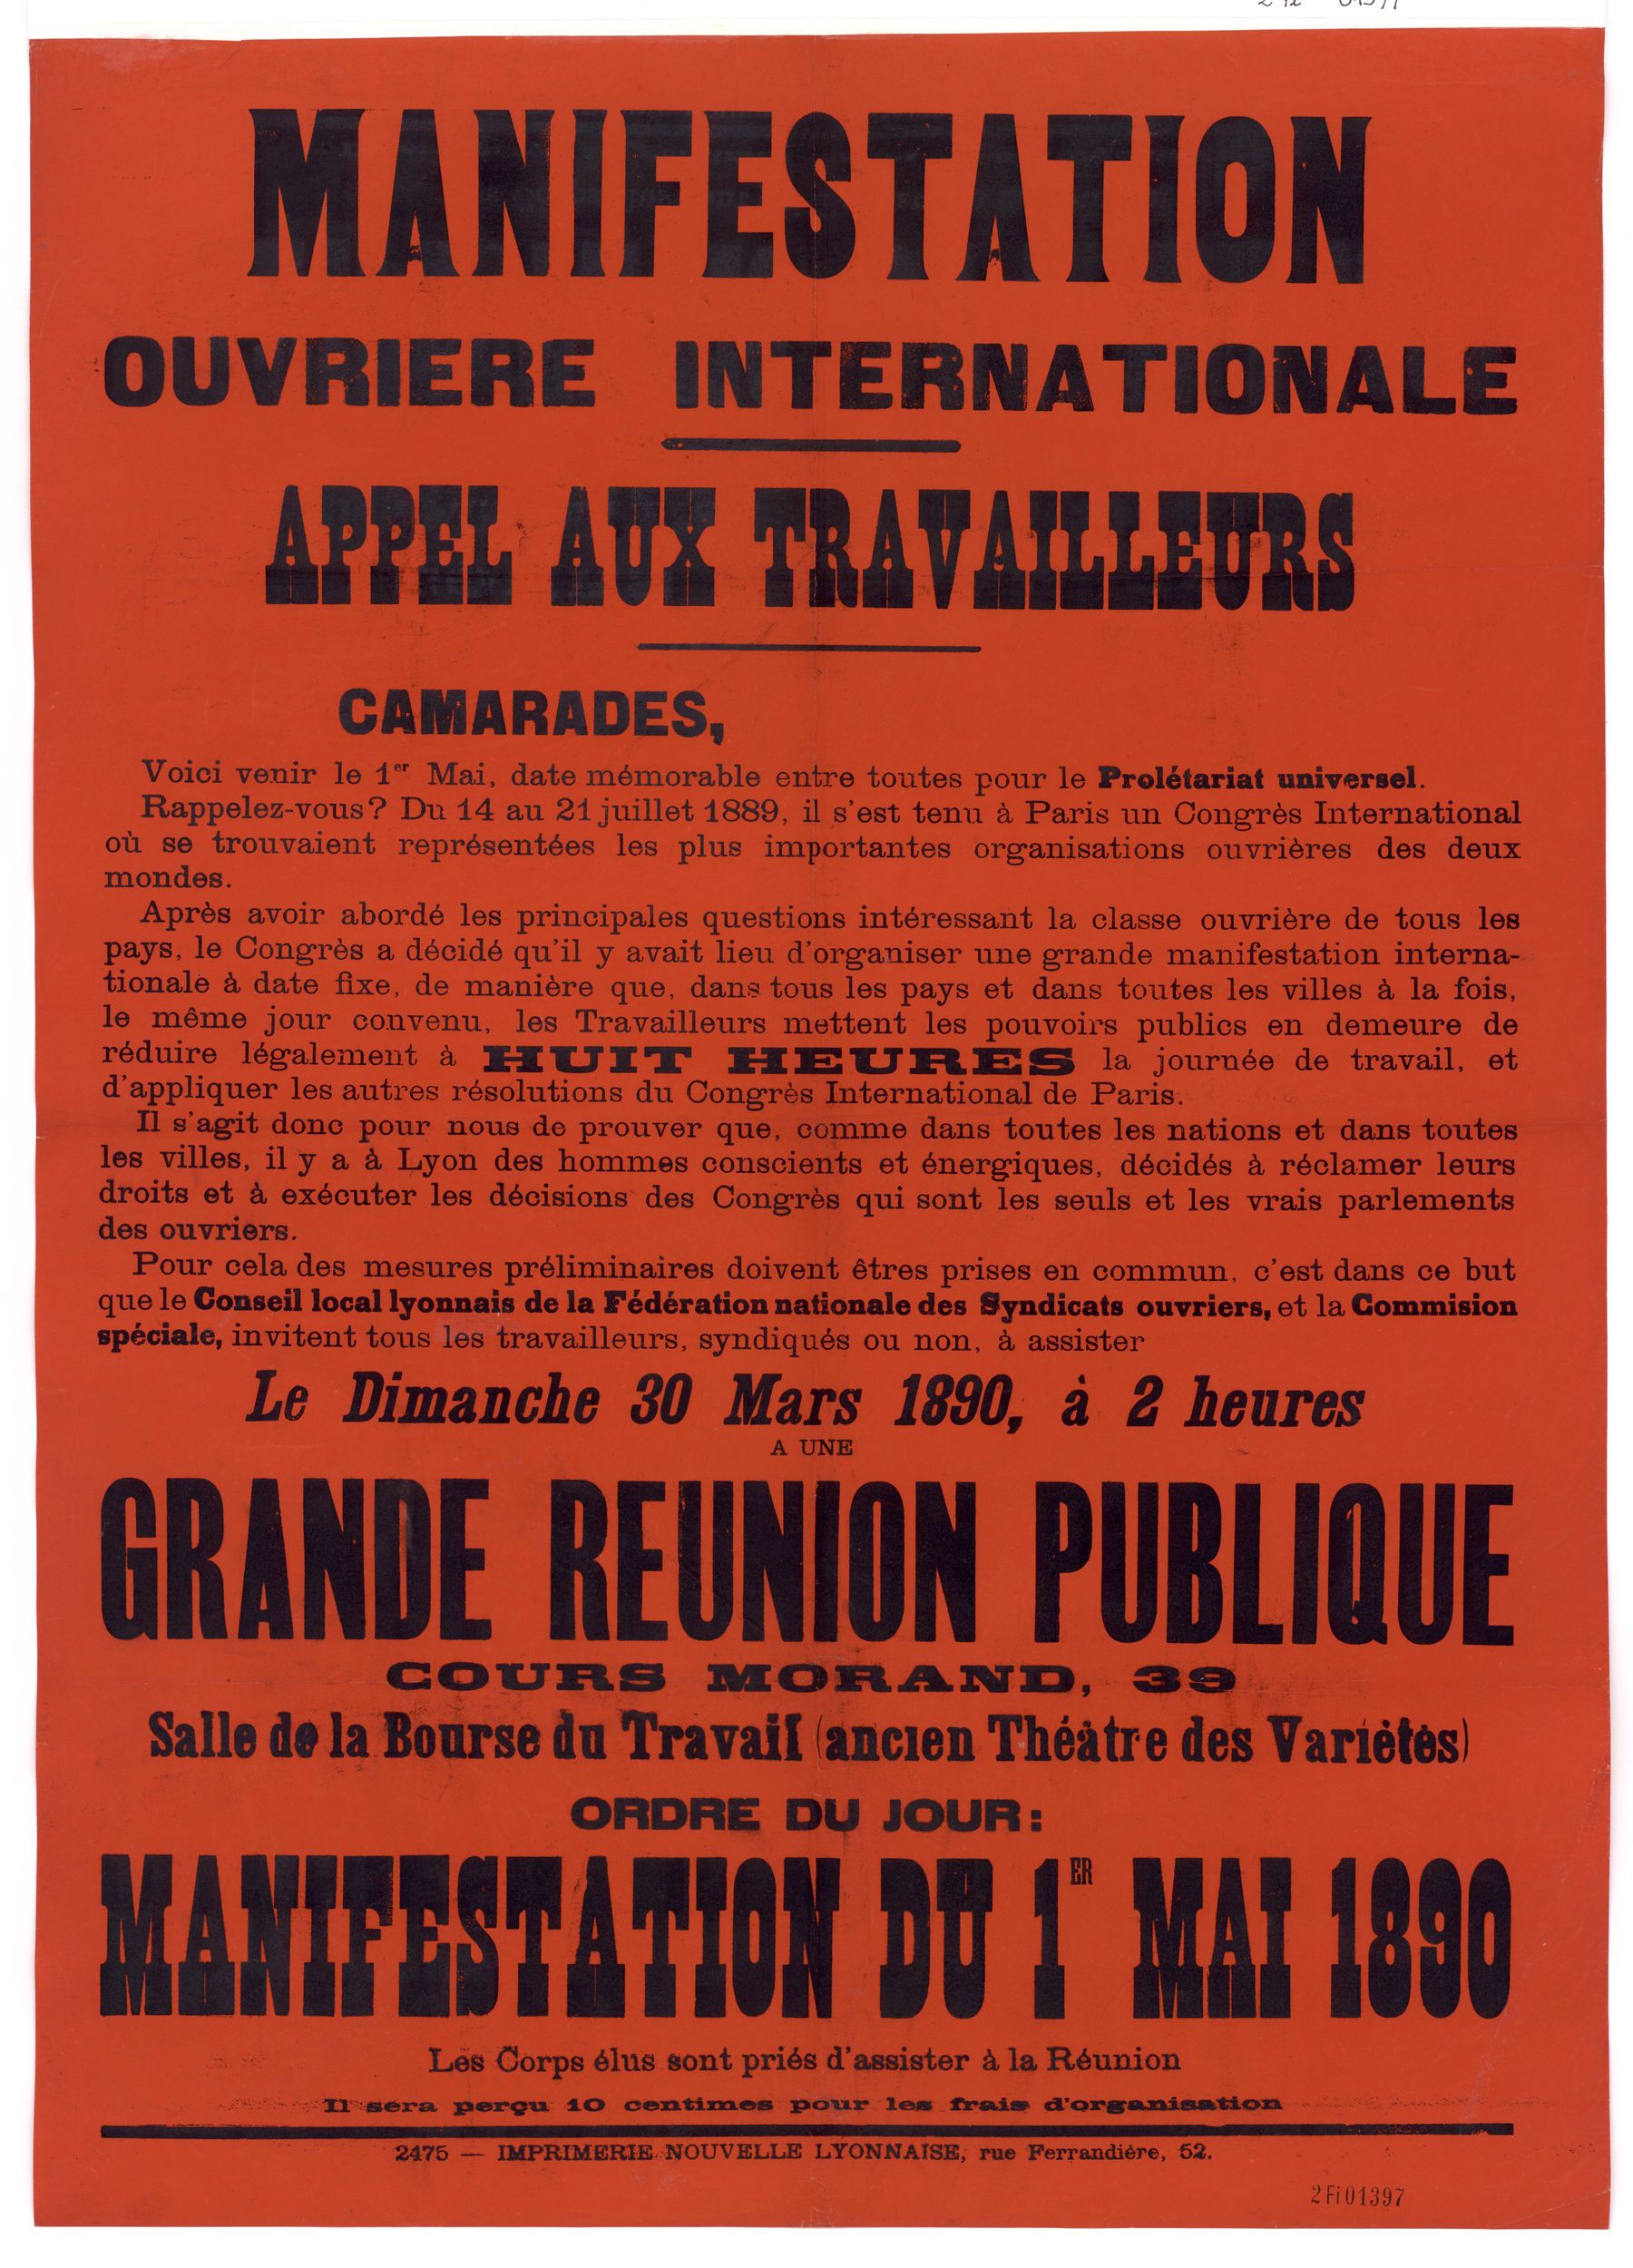 Manifestation ouvrière internationale - Appel aux travailleurs, grande réunion publique, manifestation du 1er mai 1890 : affiche syndicale (30/03/1890, cote : 2FI/1397)